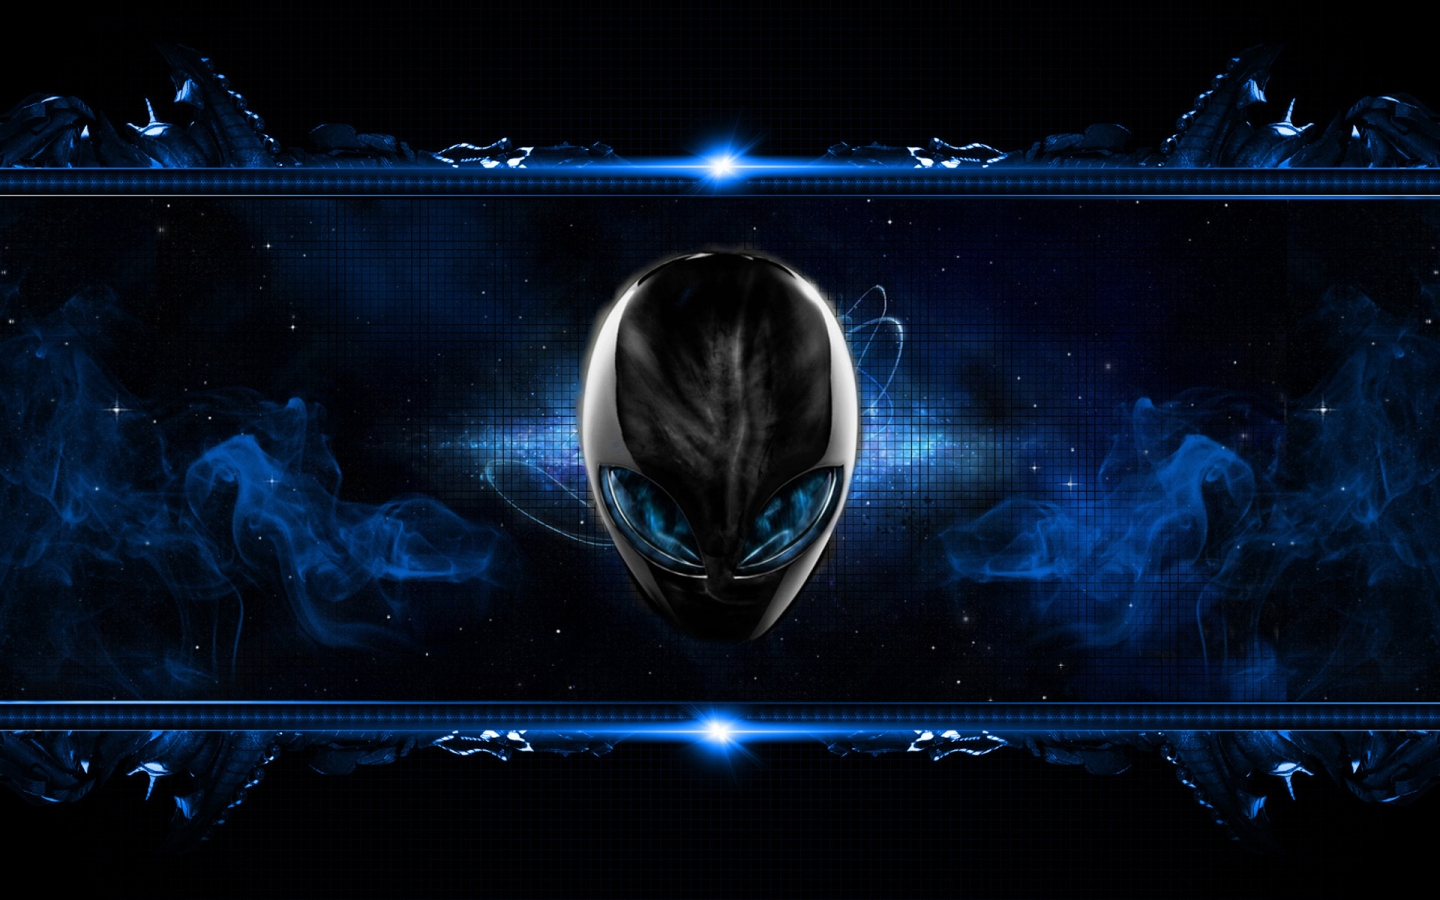 Blue Alien for 1440 x 900 widescreen resolution